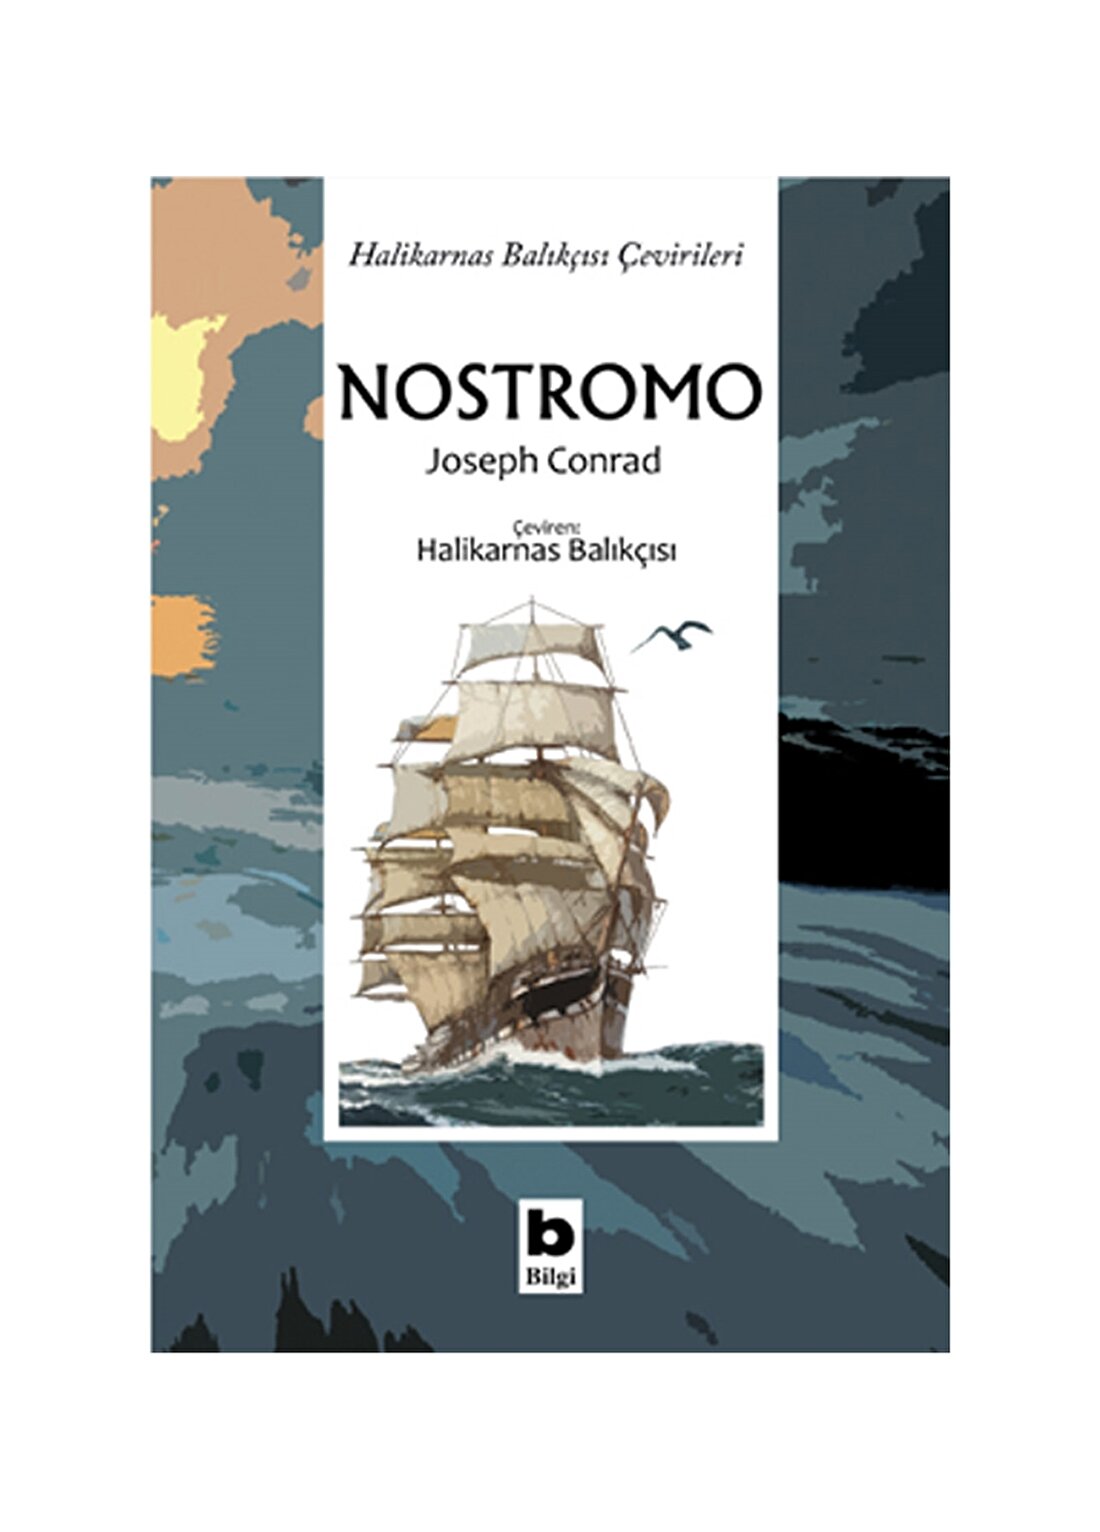 Bilgi Kitap Nostromo